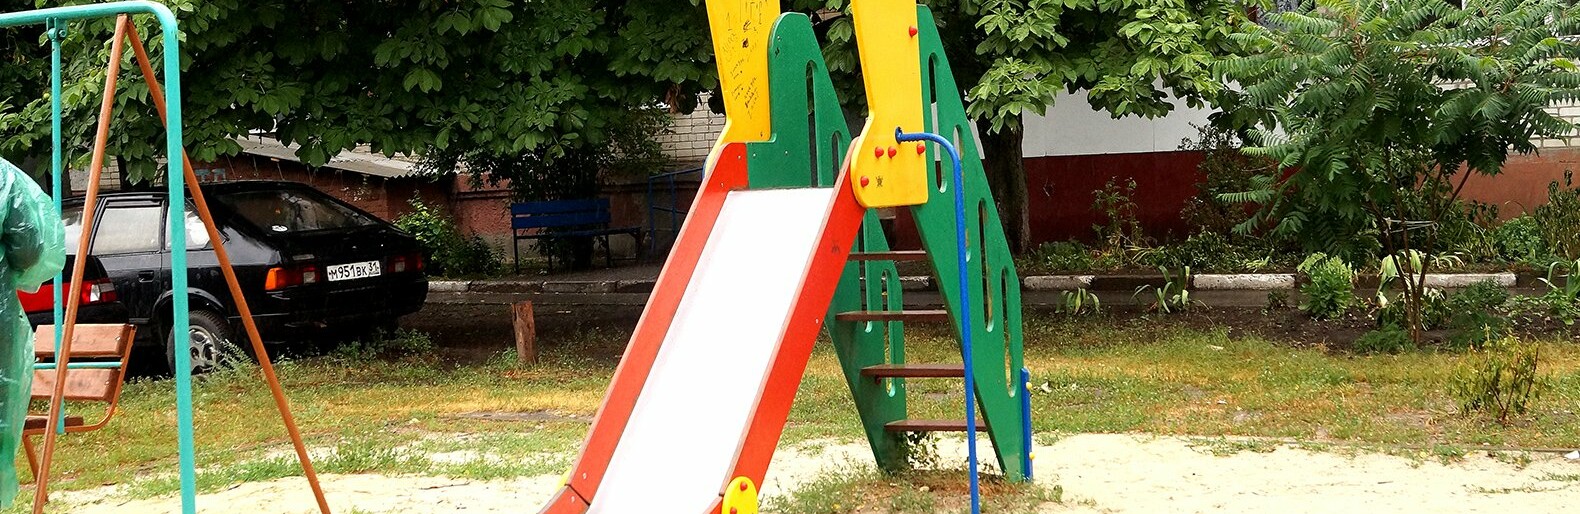  «Без слёз не взглянешь». Гладков – о детской площадке в белгородском селе Косилово 